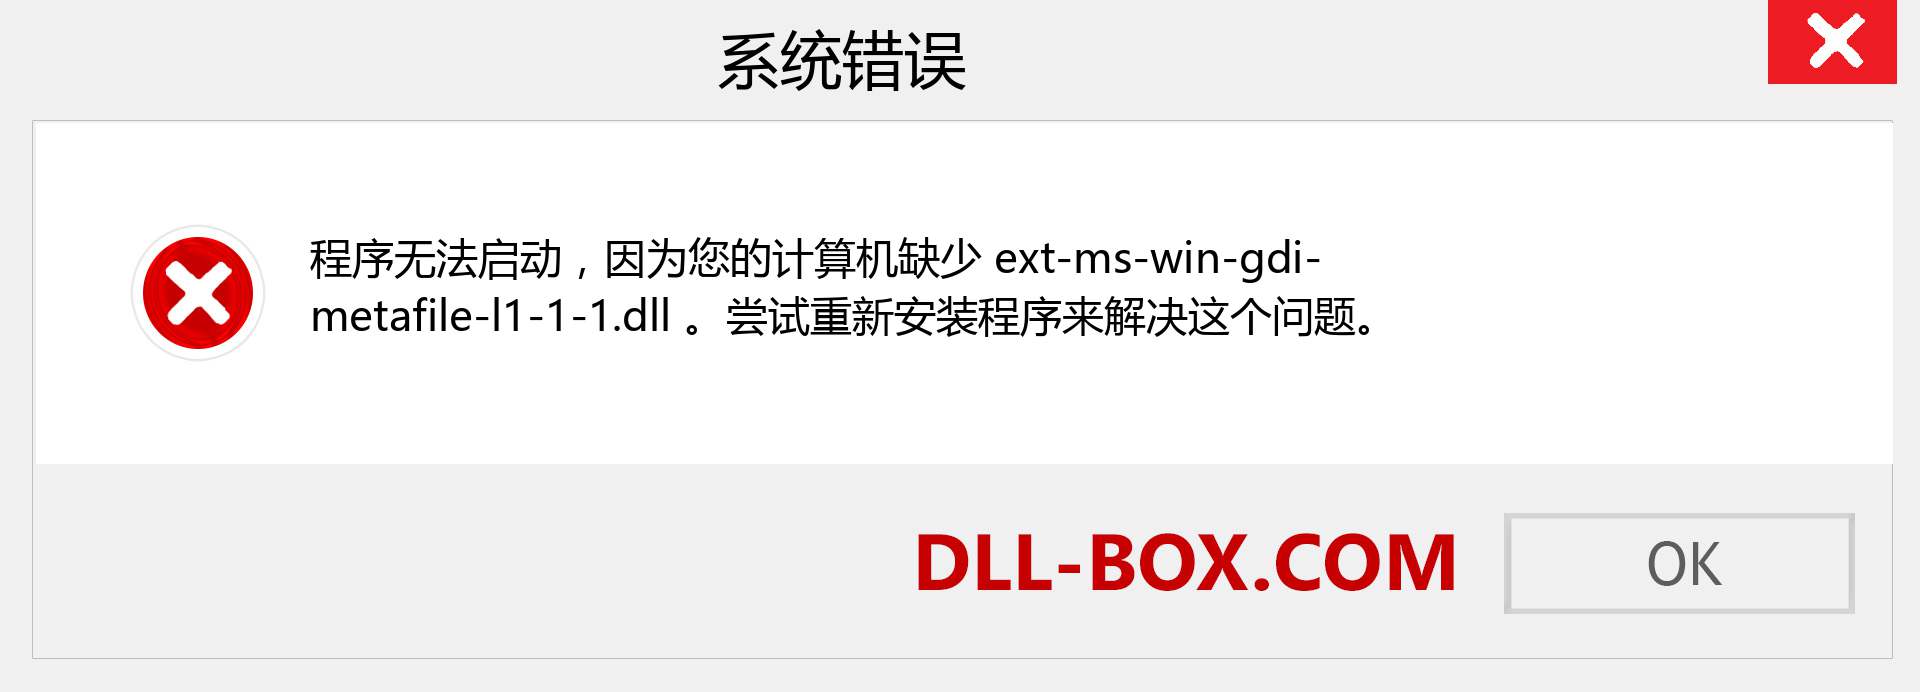 ext-ms-win-gdi-metafile-l1-1-1.dll 文件丢失？。 适用于 Windows 7、8、10 的下载 - 修复 Windows、照片、图像上的 ext-ms-win-gdi-metafile-l1-1-1 dll 丢失错误